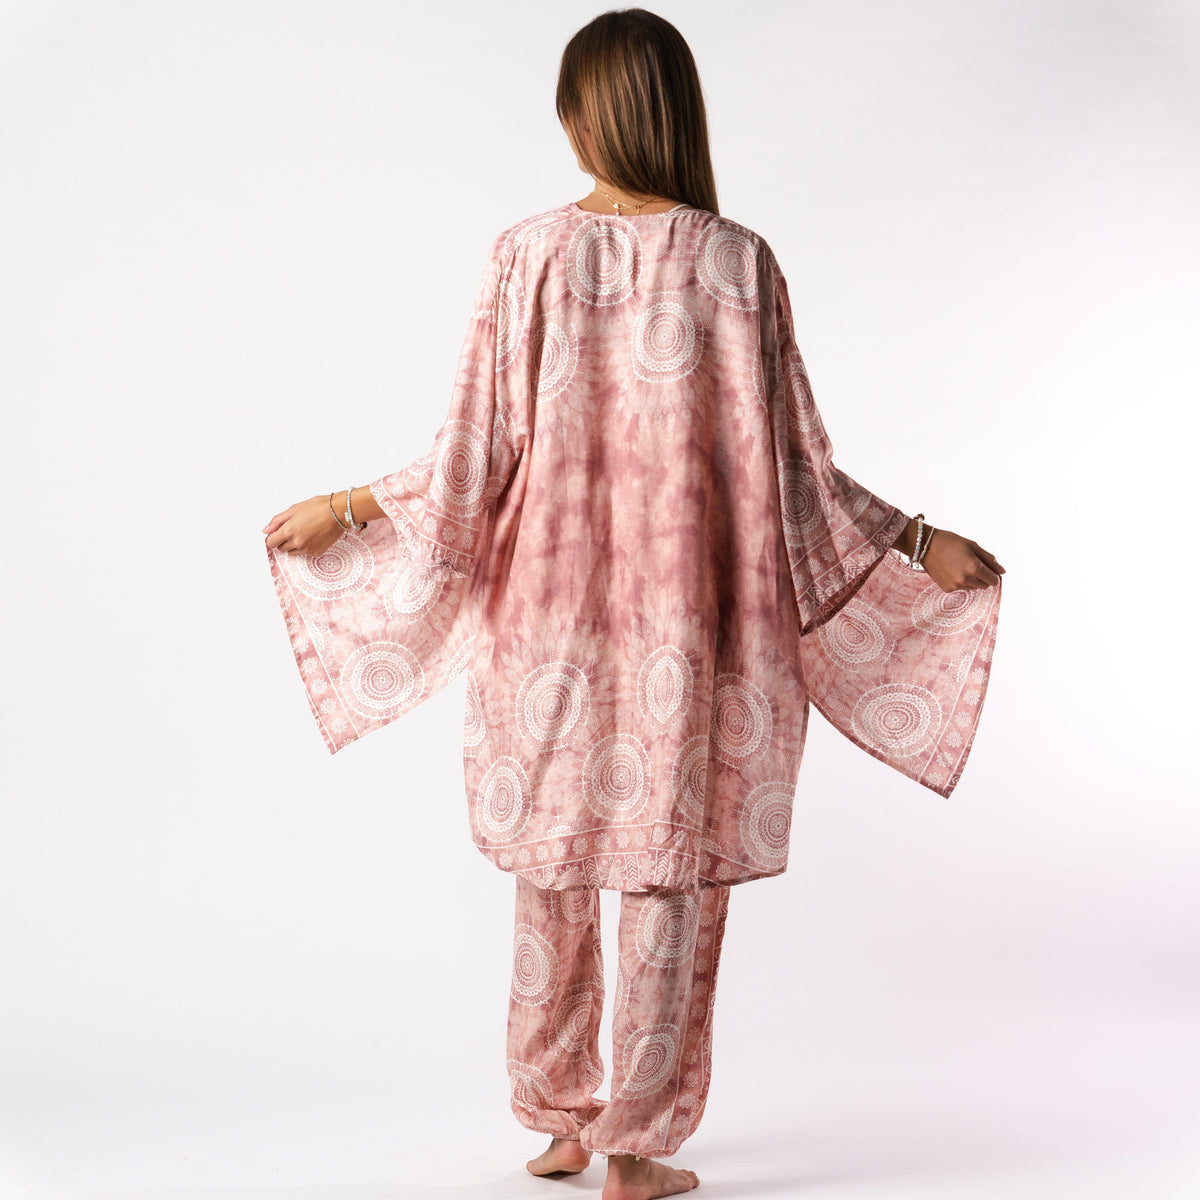 Model wearing a matching lounge set. The set consists of pink and white mandala print harem pants and a matching kimono